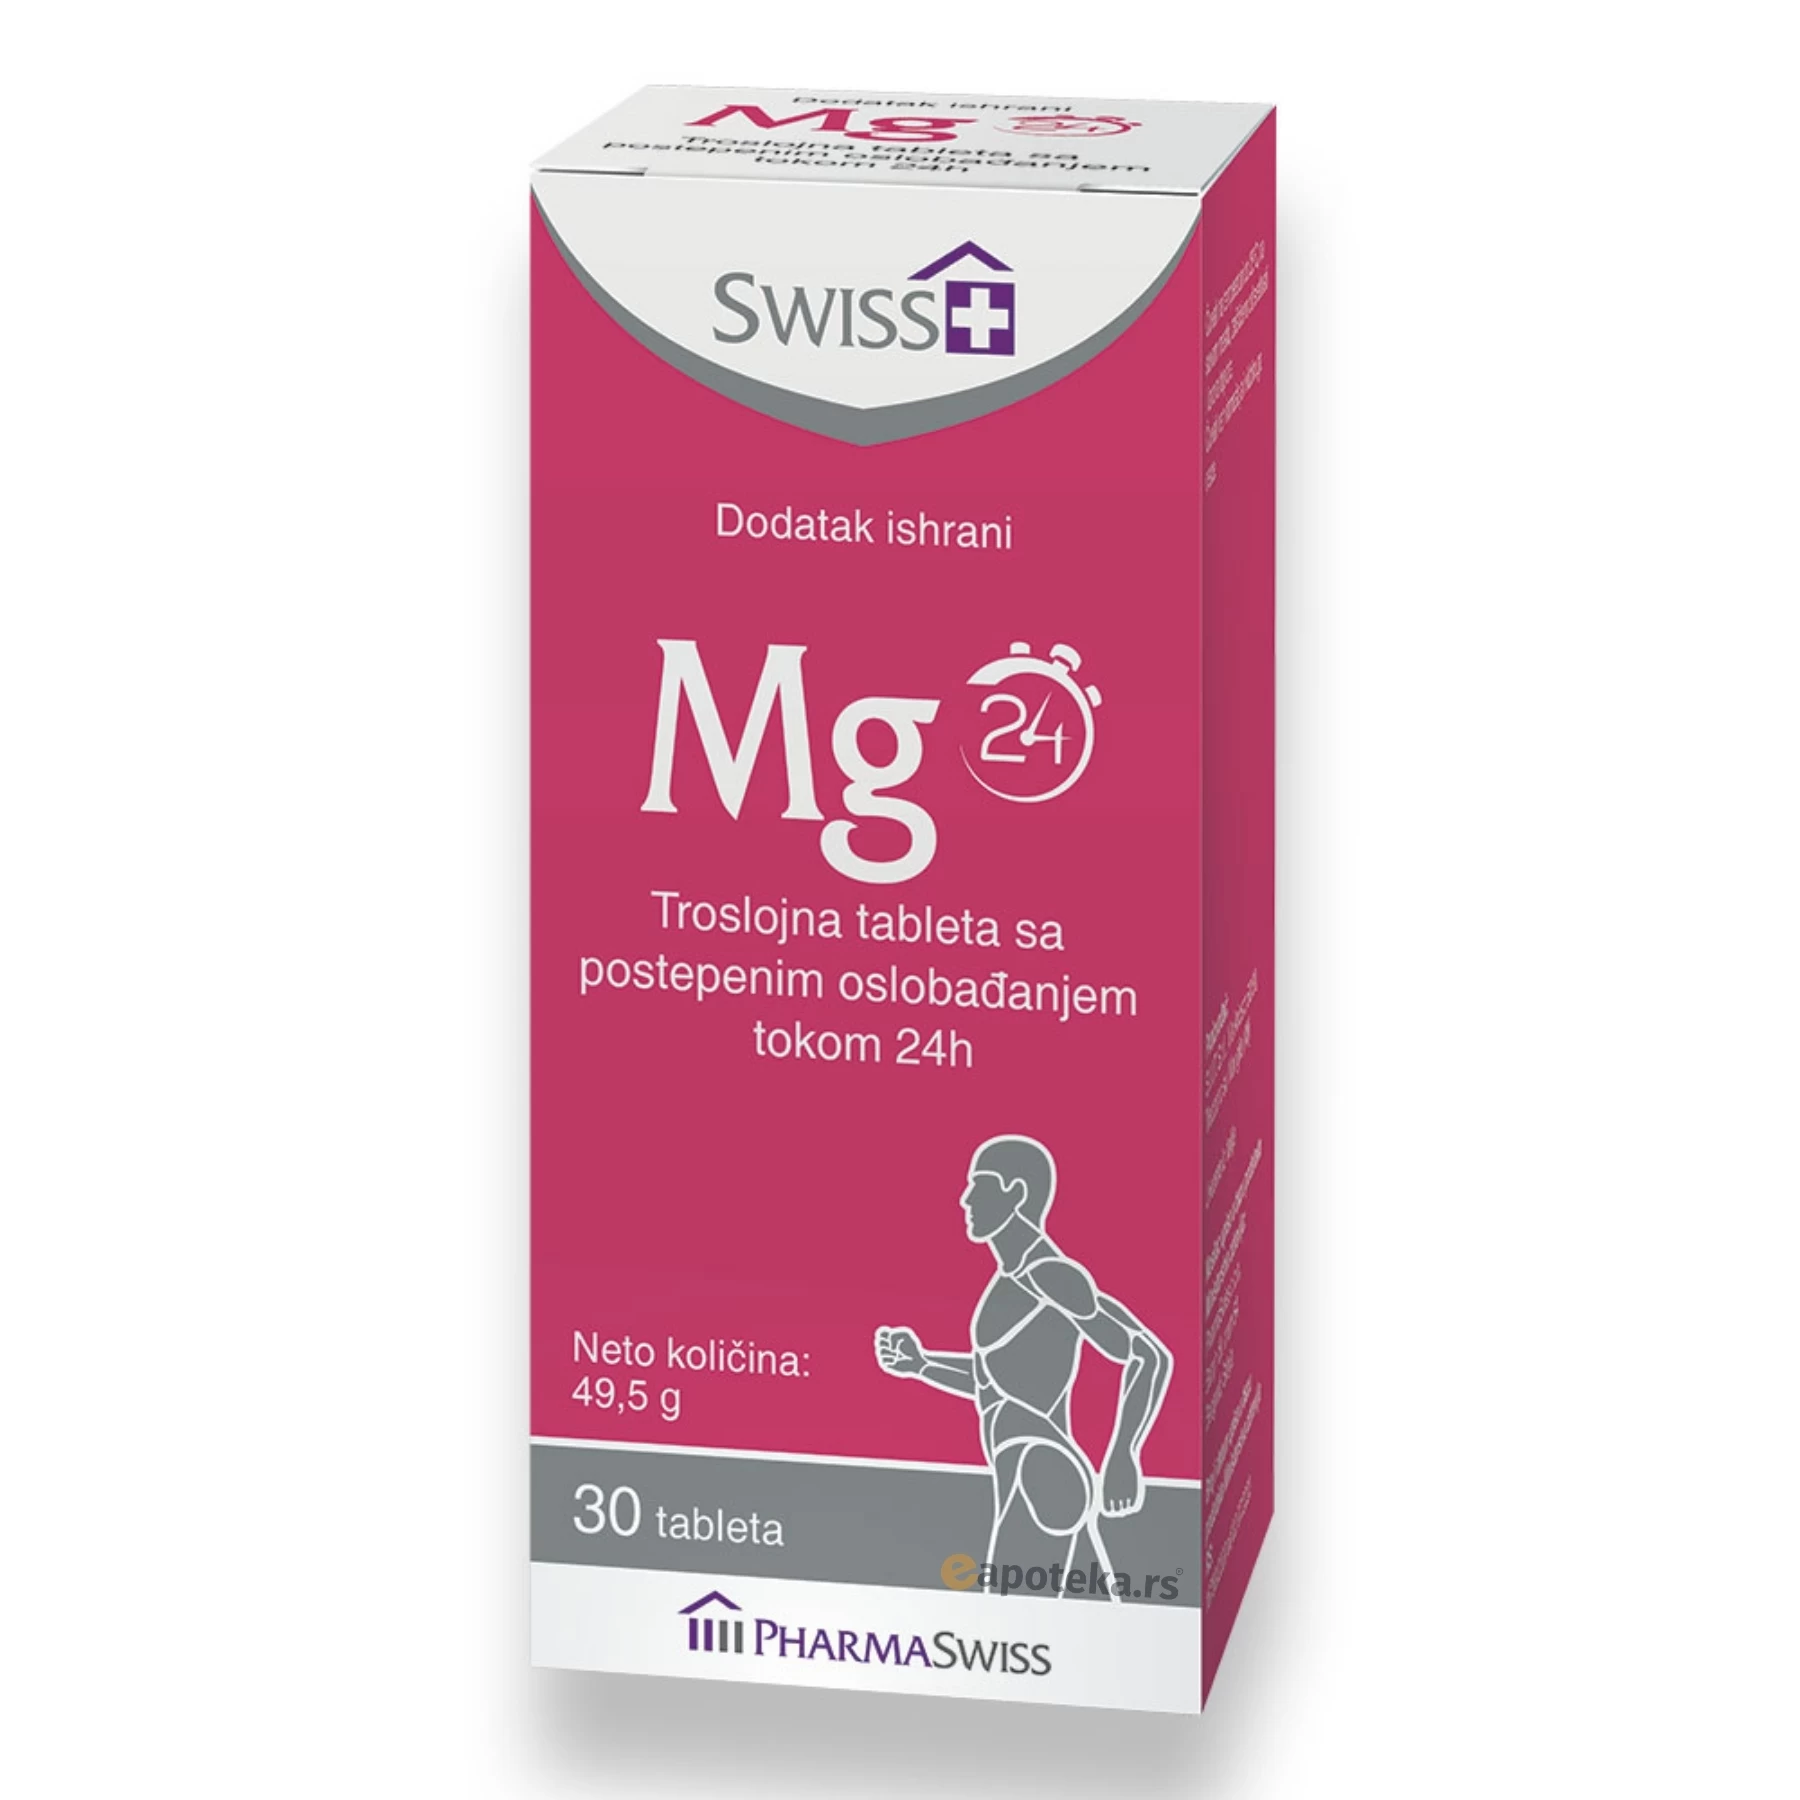 SWISS+ Mg Troslojne Tablete Magnezijuma sa Postepenim Oslobađanjem Tokom 24h; 30 Tableta